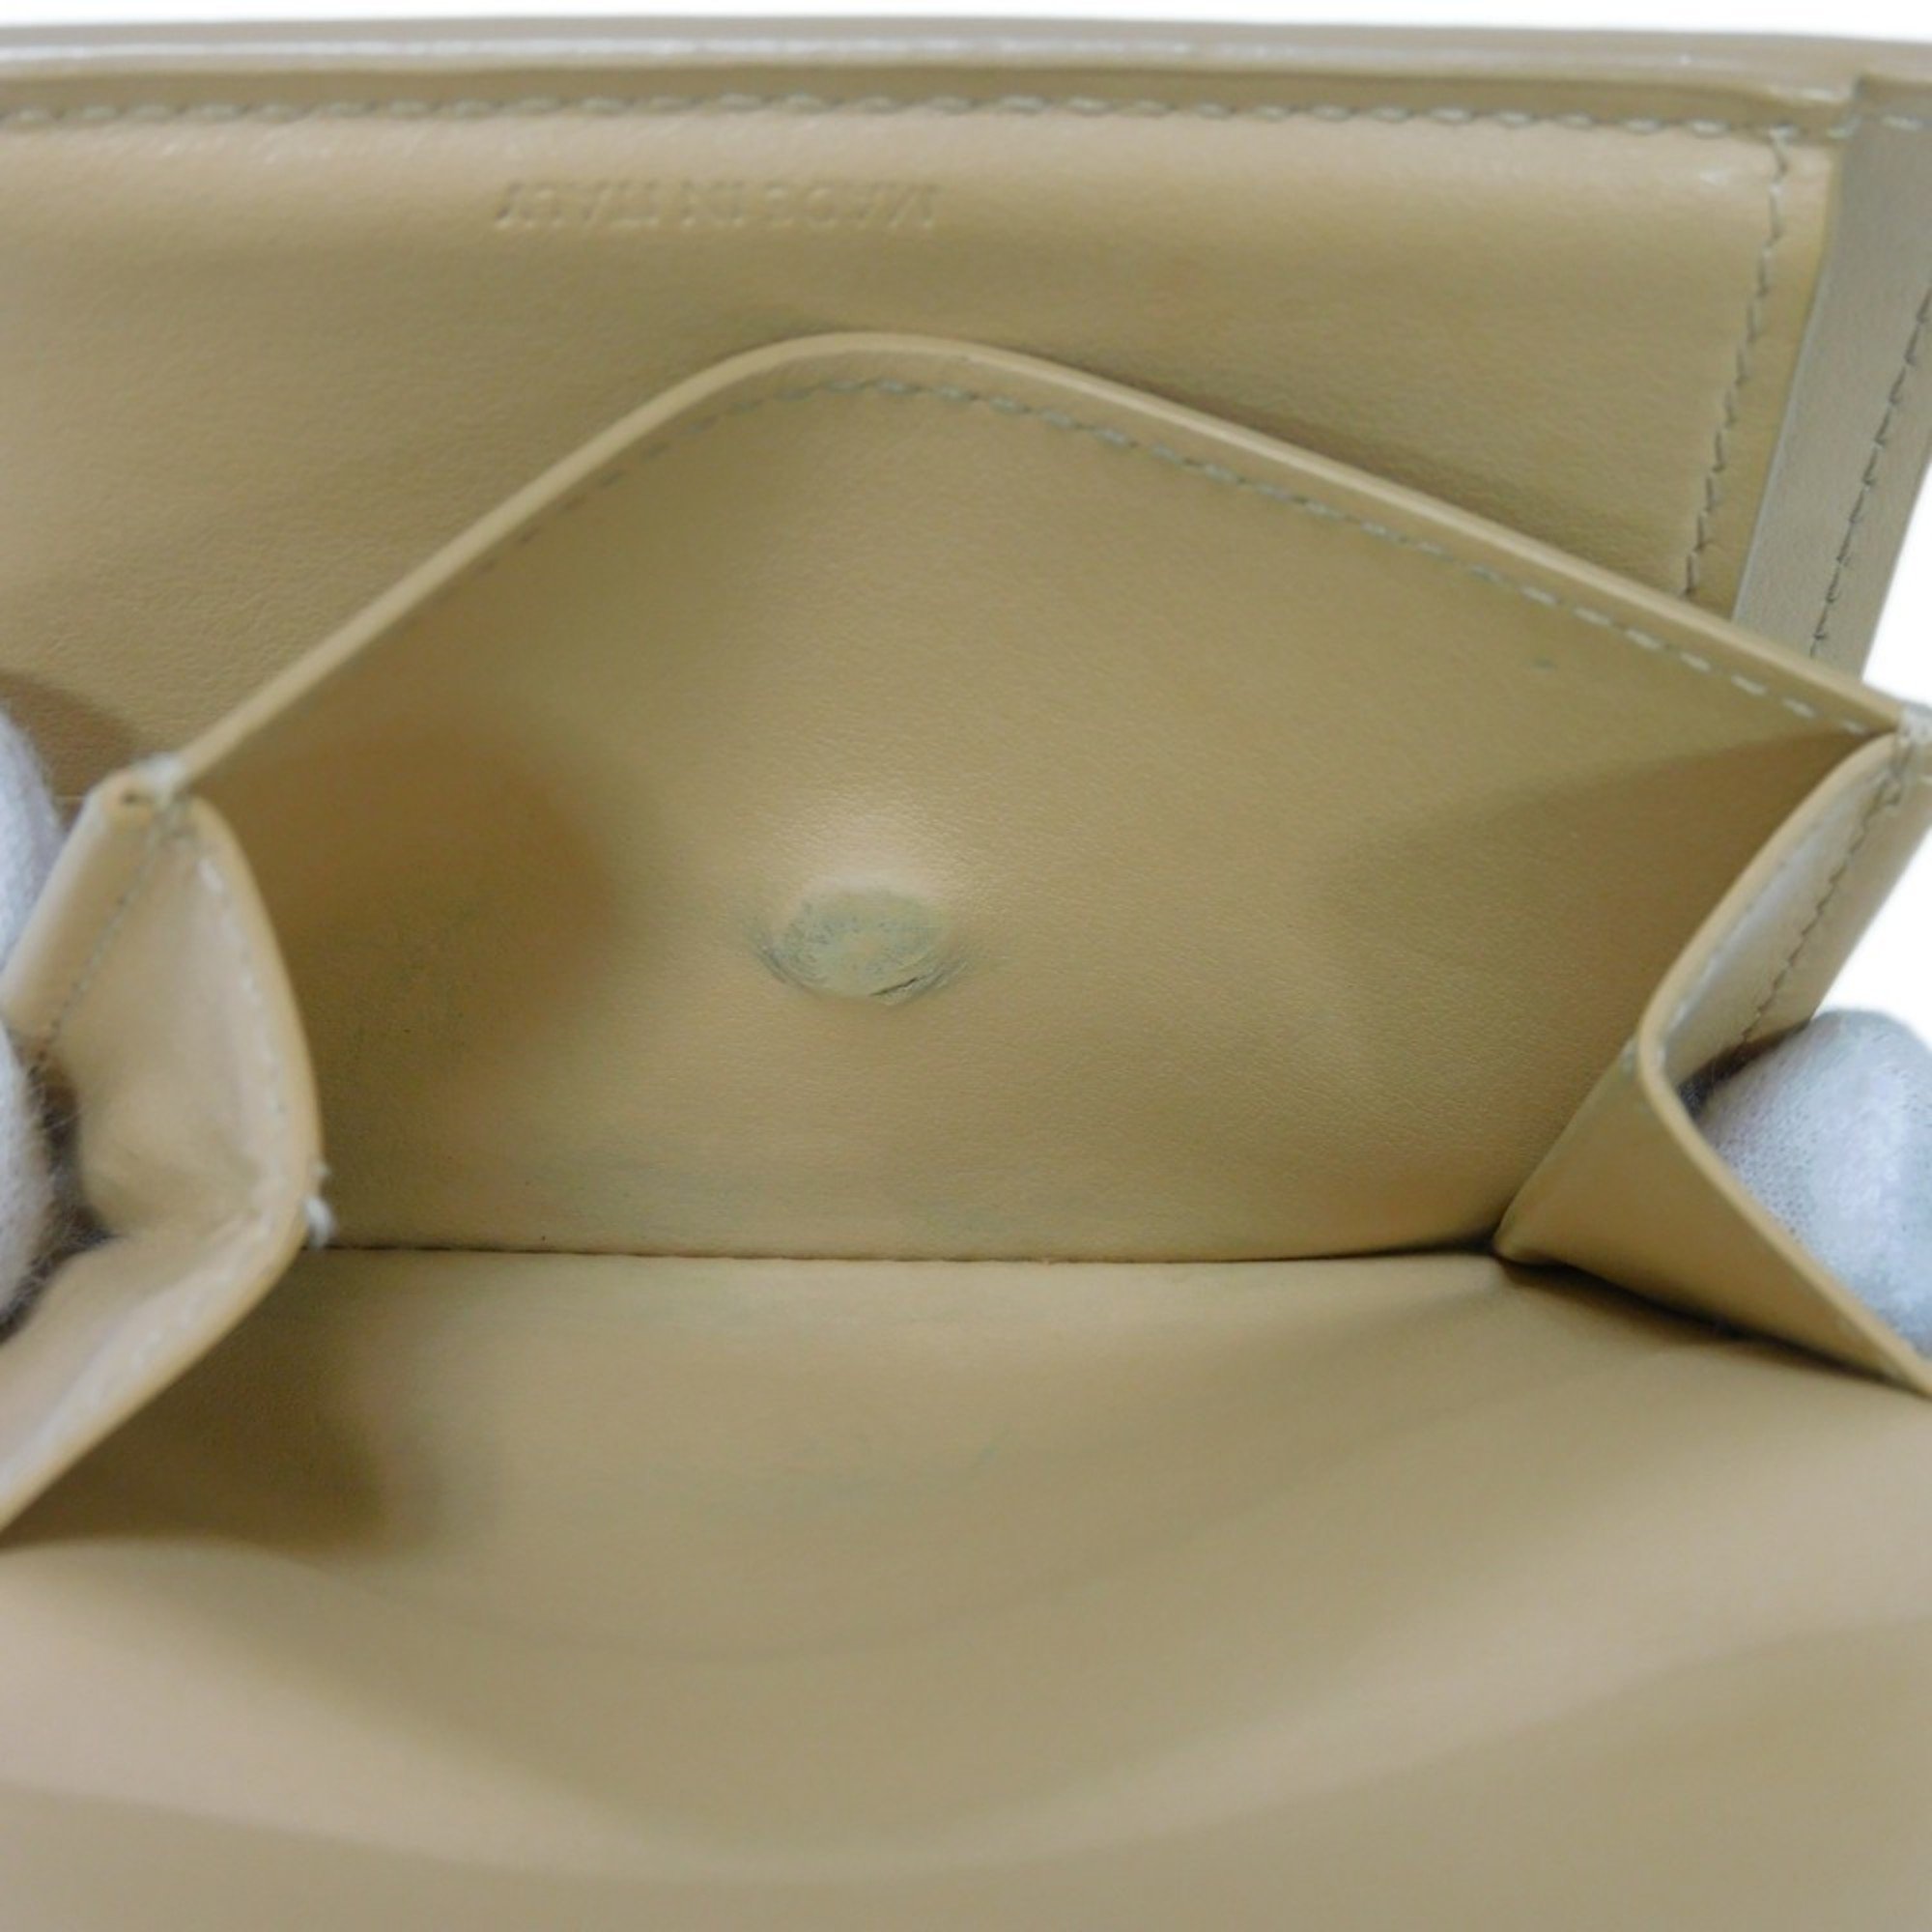 CELINE Small Trifold Wallet Foil Stamped W Compact Beige 10B57 Men's Women's Billfold